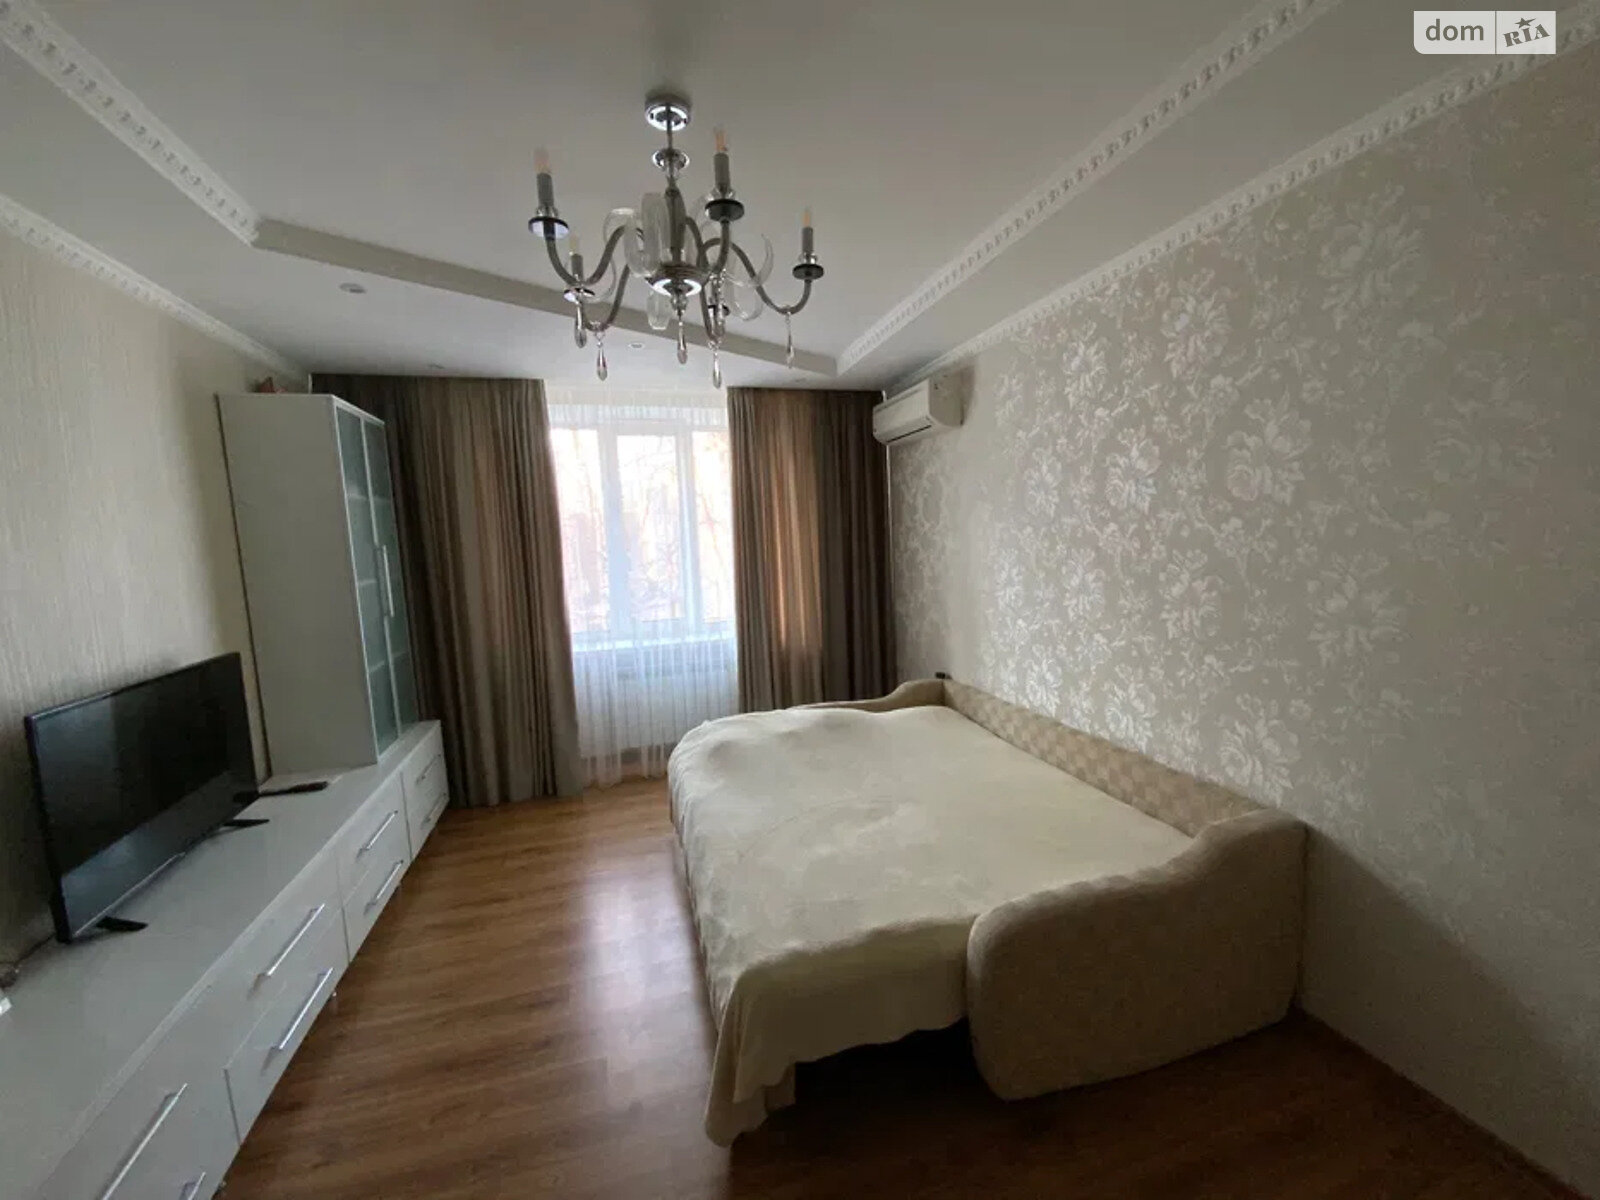 Продажа двухкомнатной квартиры в Шевченки, на Черновола Вячеслава улица, фото 1